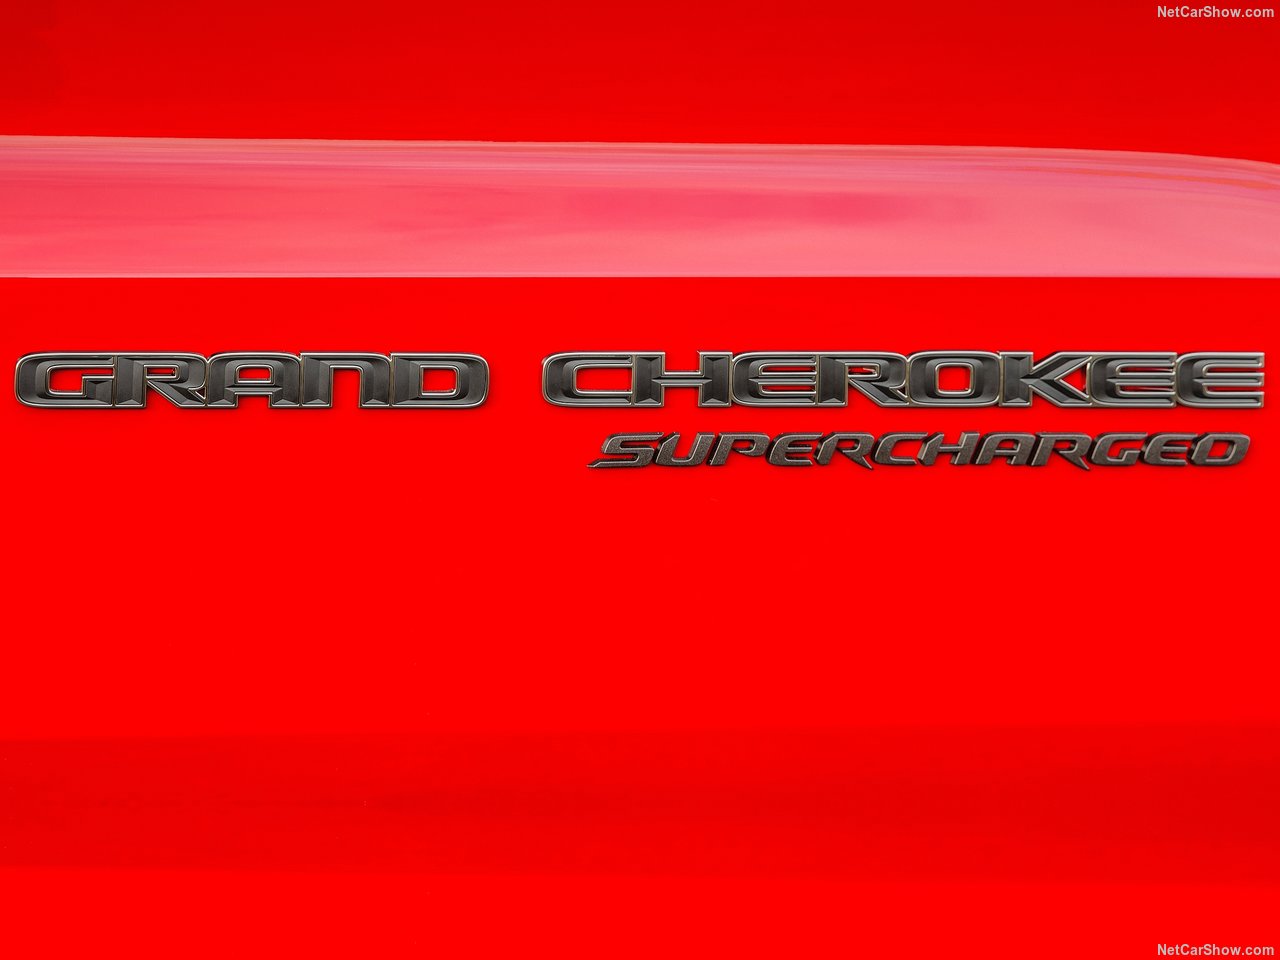 Jeep Grand Cherokee Trackhawk leva Cristiano Ronaldo dos 0 aos 100 km/h em 3,5 segundos